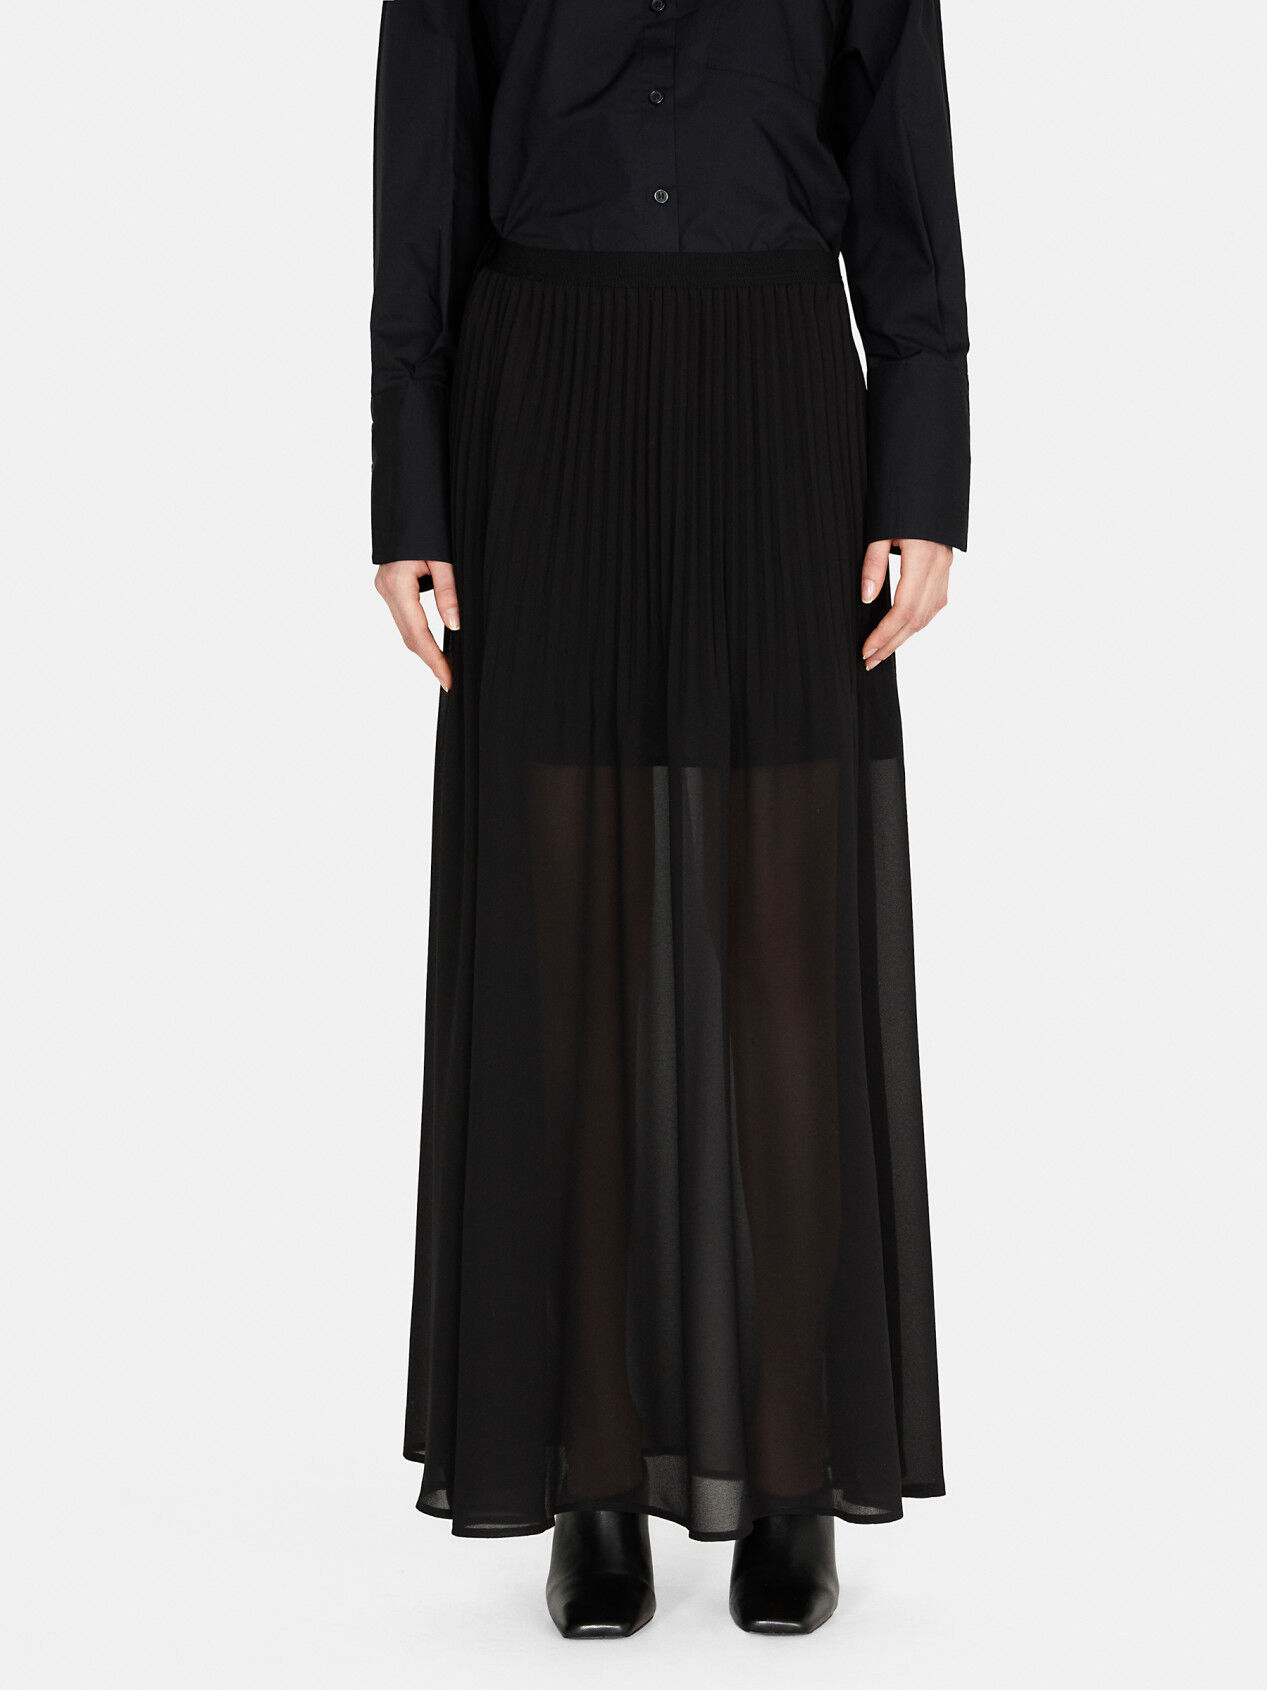 black pleated skirt / pleated maxi skirt / Modern pleated skirt